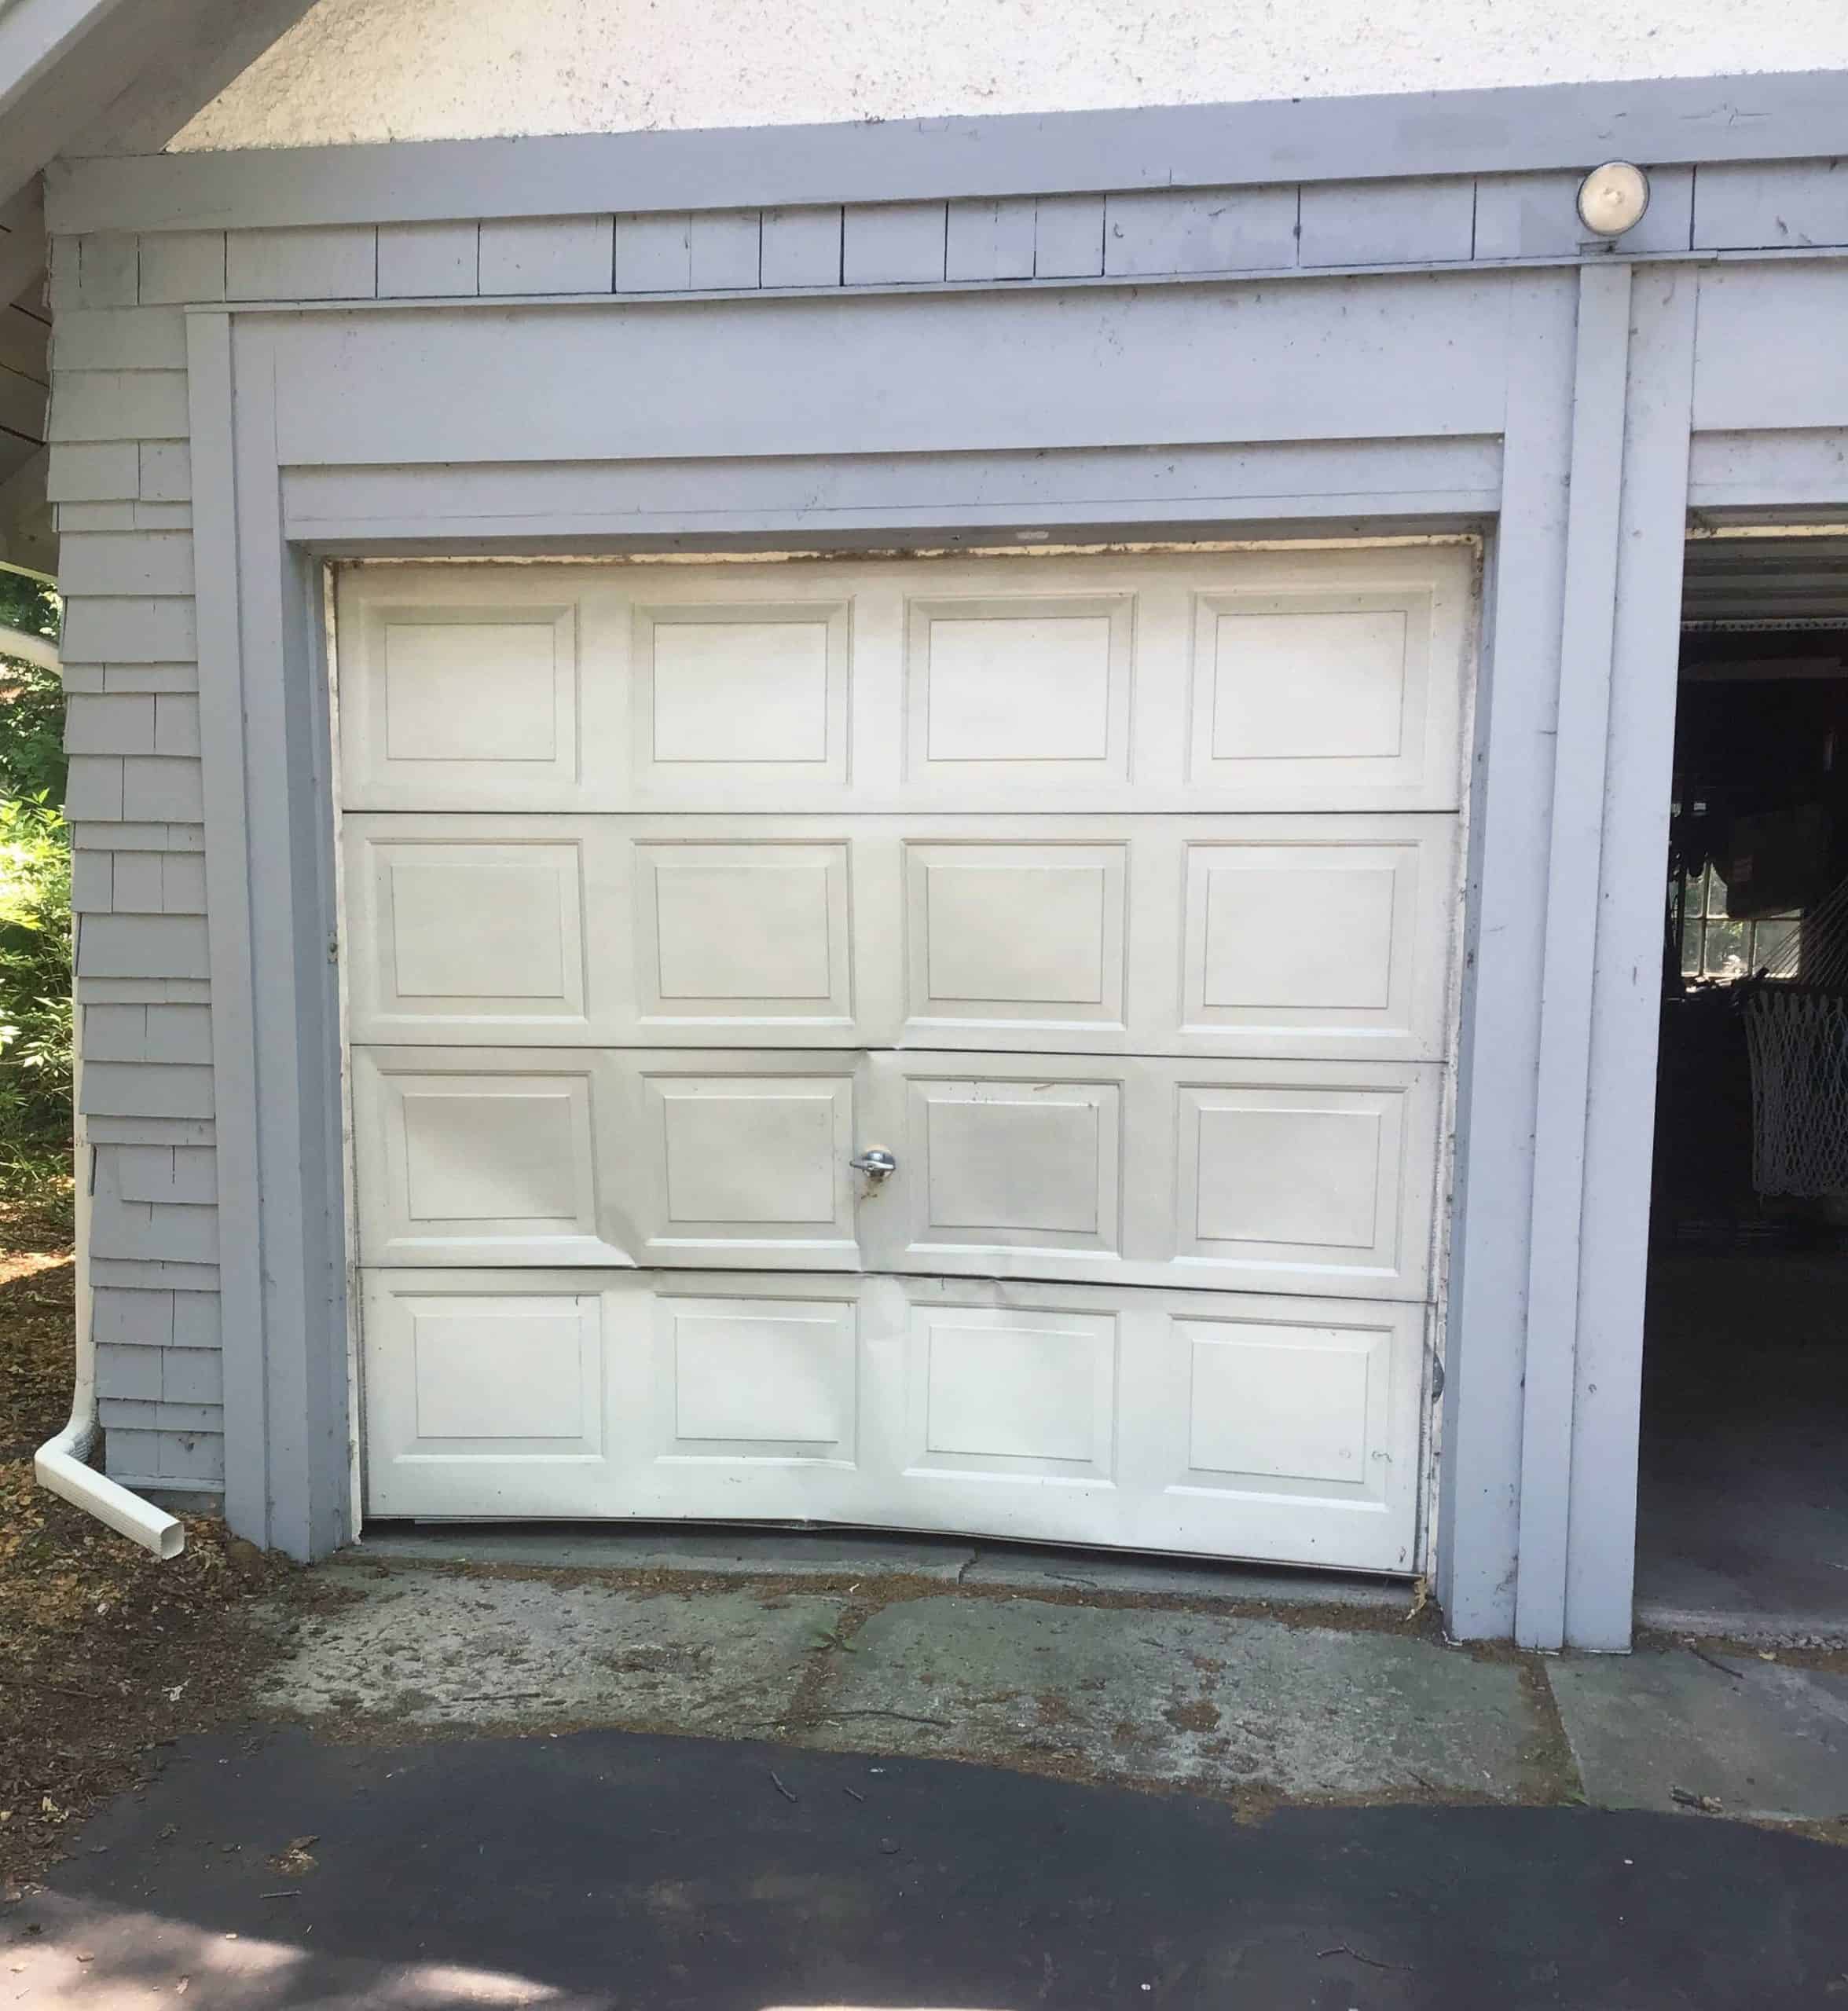 A dented garage door in need of garage door repair in Ingleside, Illinois